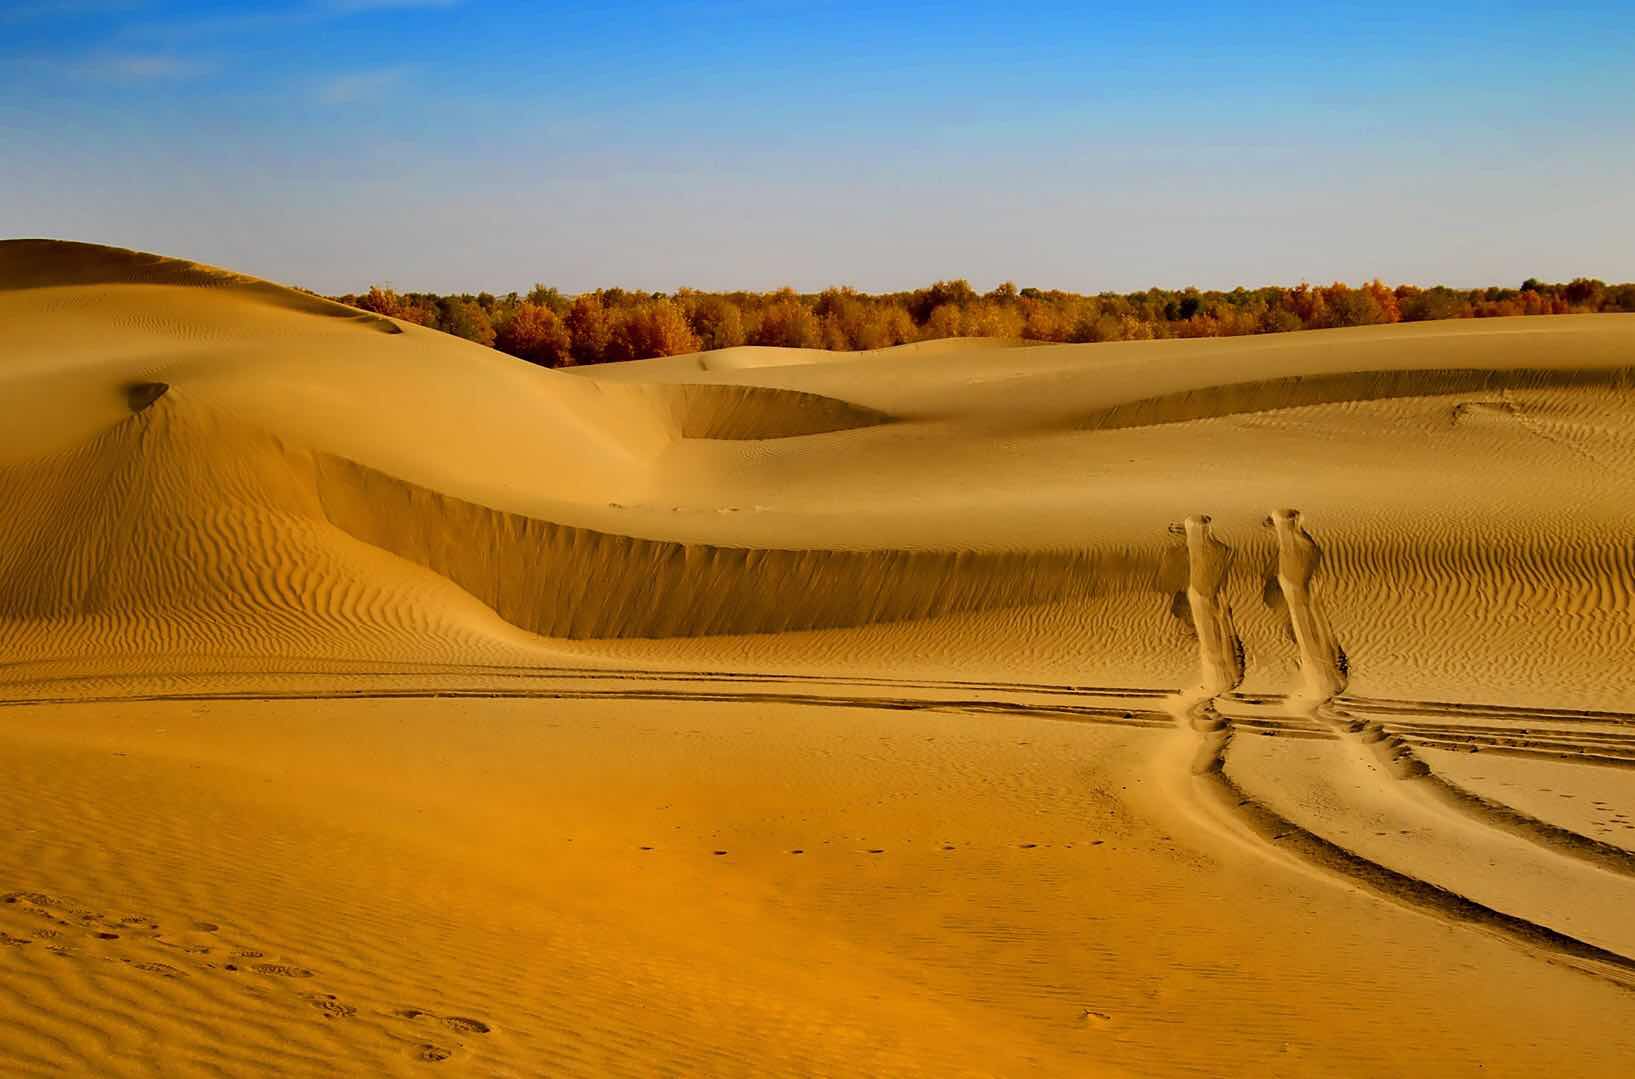 塔克拉玛干沙漠 - 绝美图库 - 华声论坛